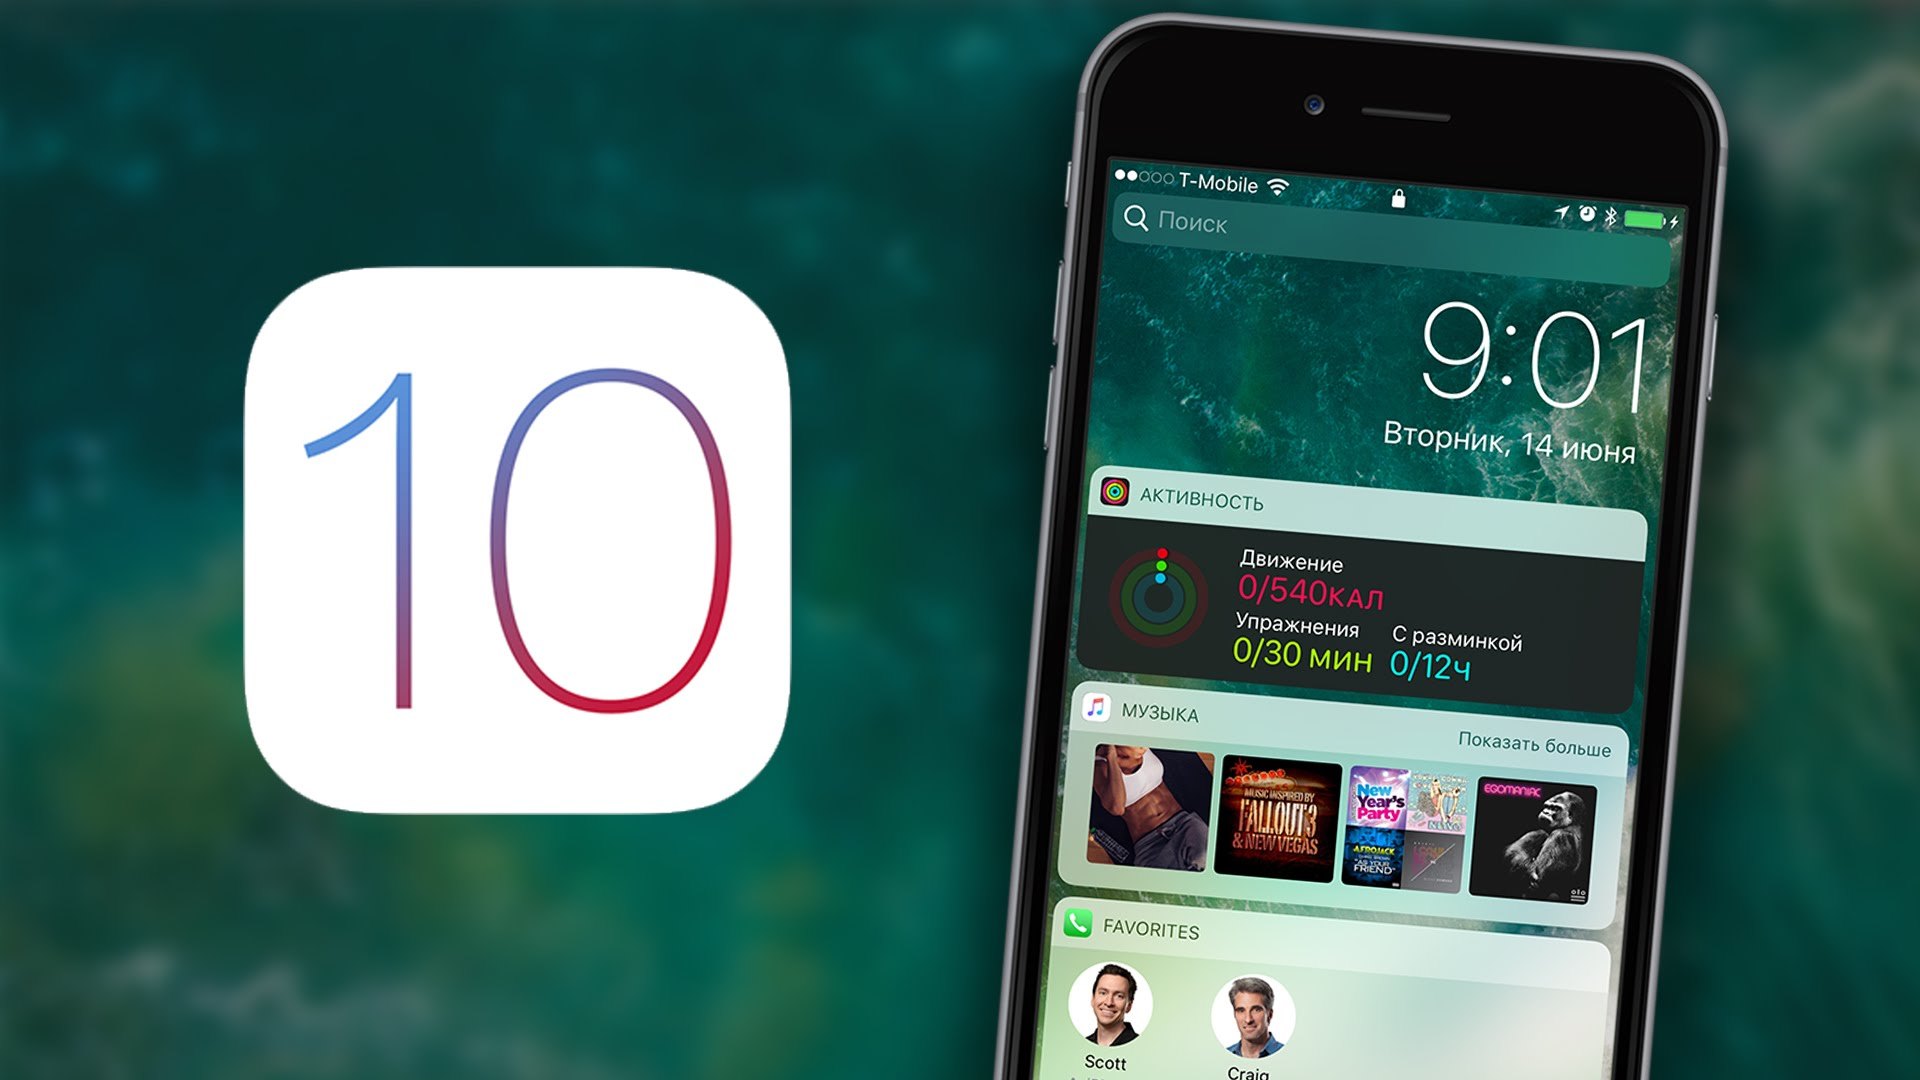 Потенциальные преимущества iOS 10 для разработки и тестирования мобильных приложений (Перевод статьи) - 1